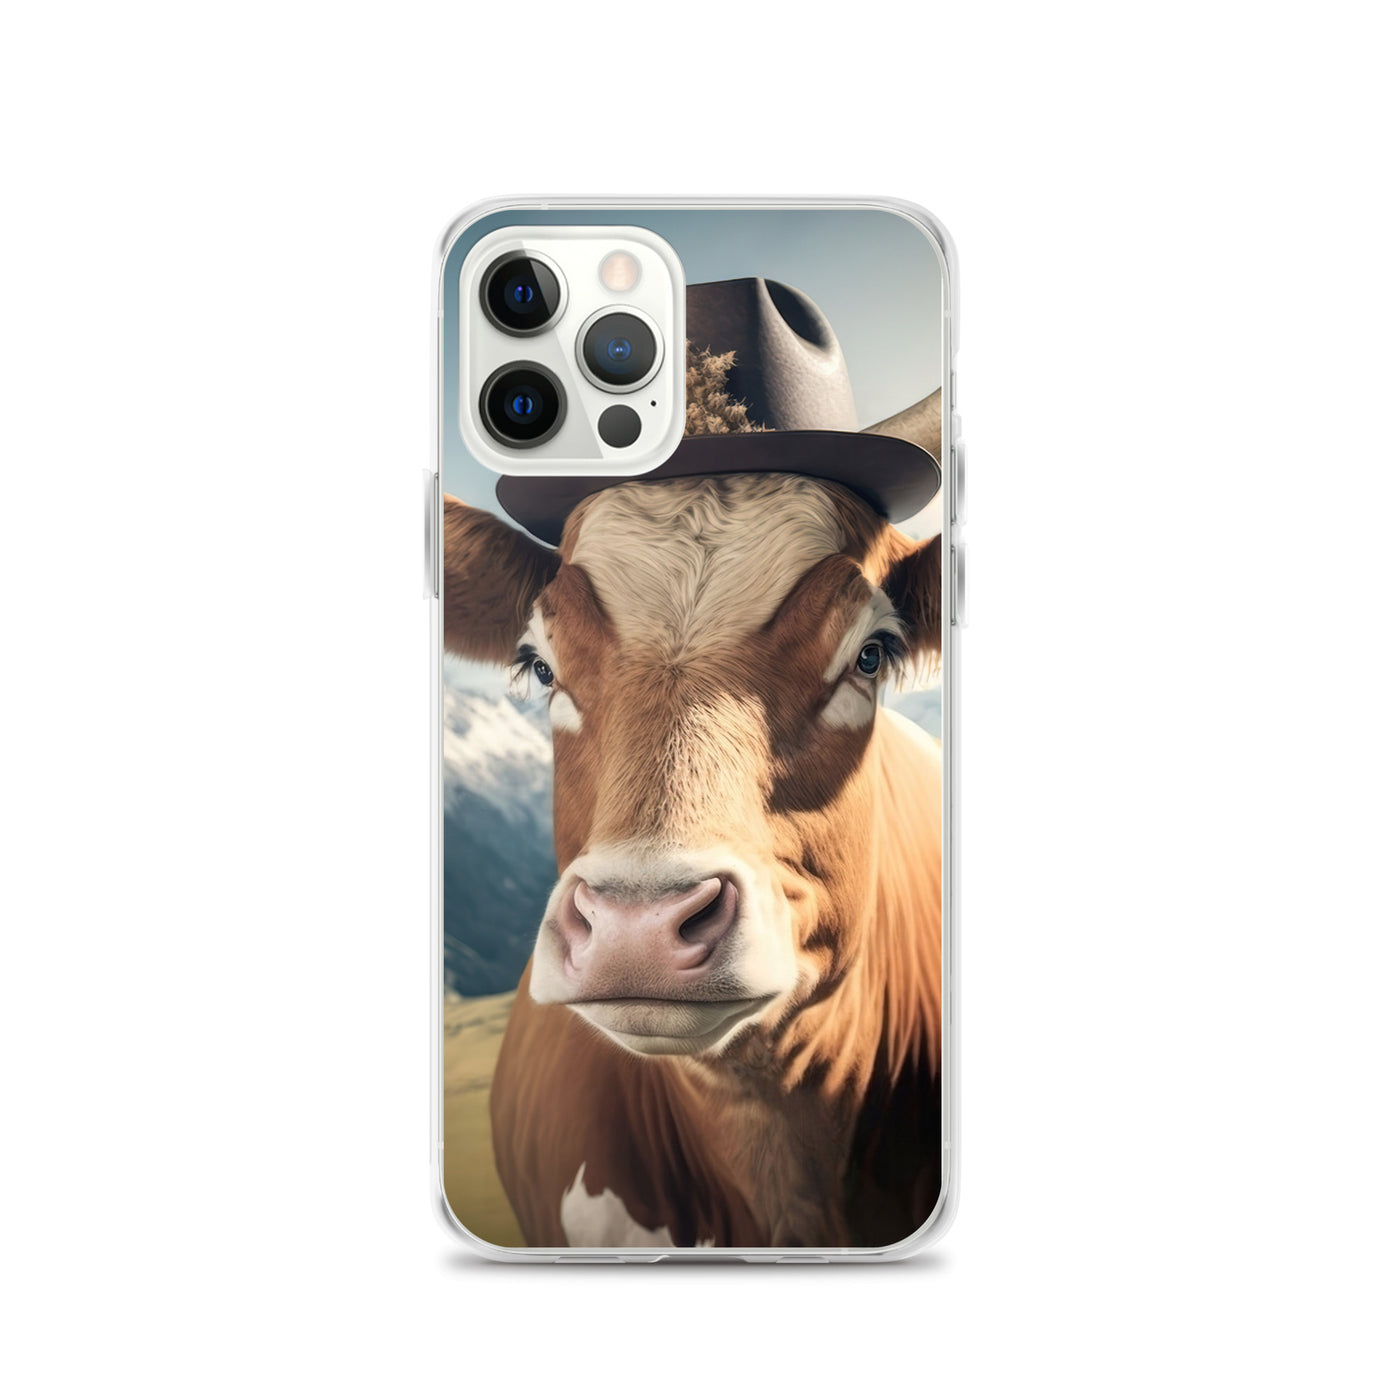 Kuh mit Hut in den Alpen - Berge im Hintergrund - Landschaftsmalerei - iPhone Schutzhülle (durchsichtig) berge xxx iPhone 12 Pro